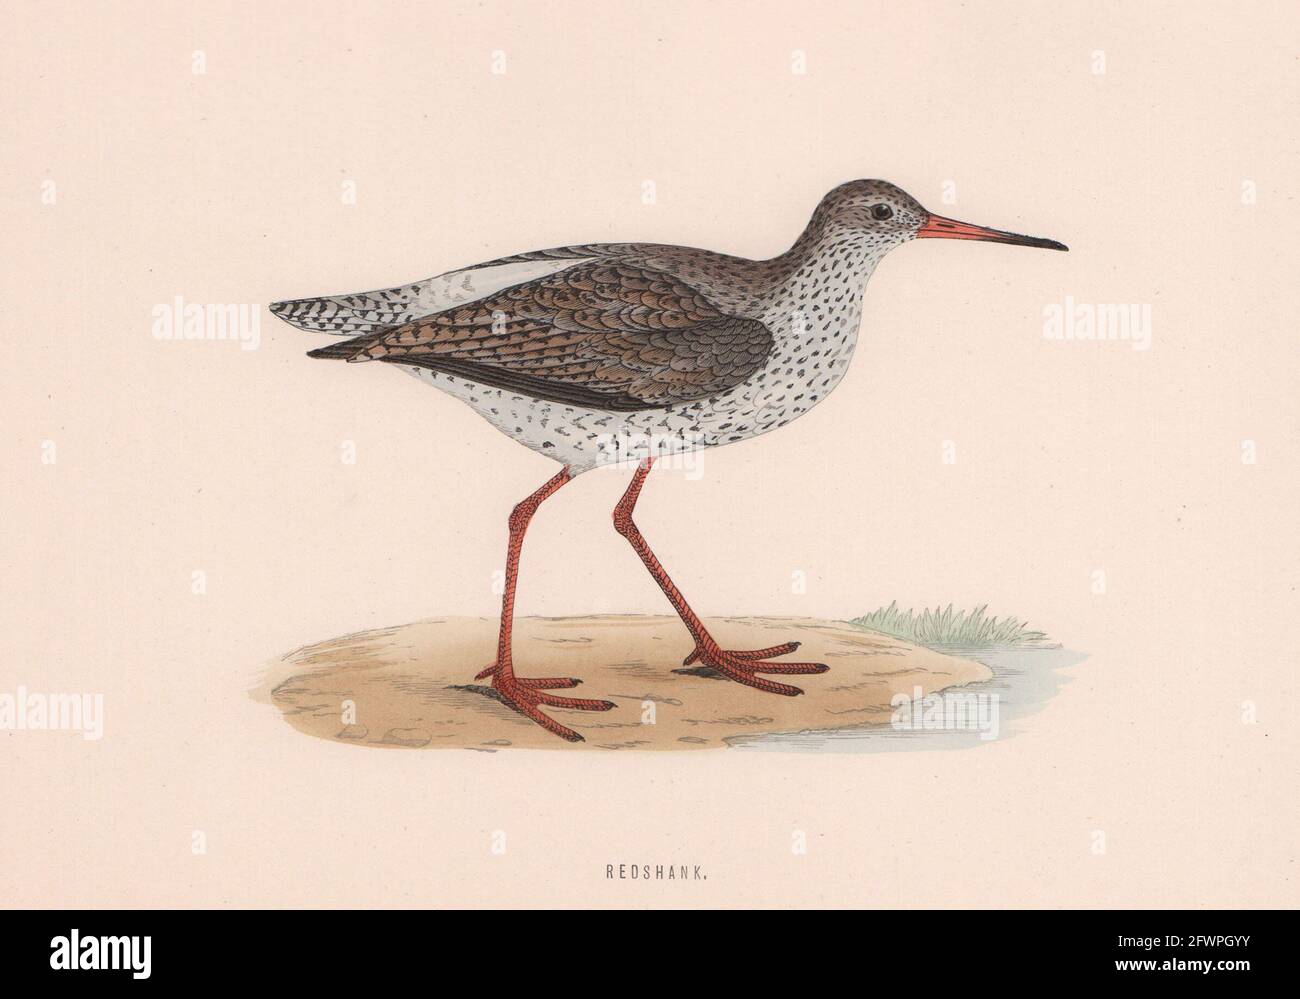 Queue de requeue. Morris's British Birds. Imprimé couleur antique 1870 vieux Banque D'Images